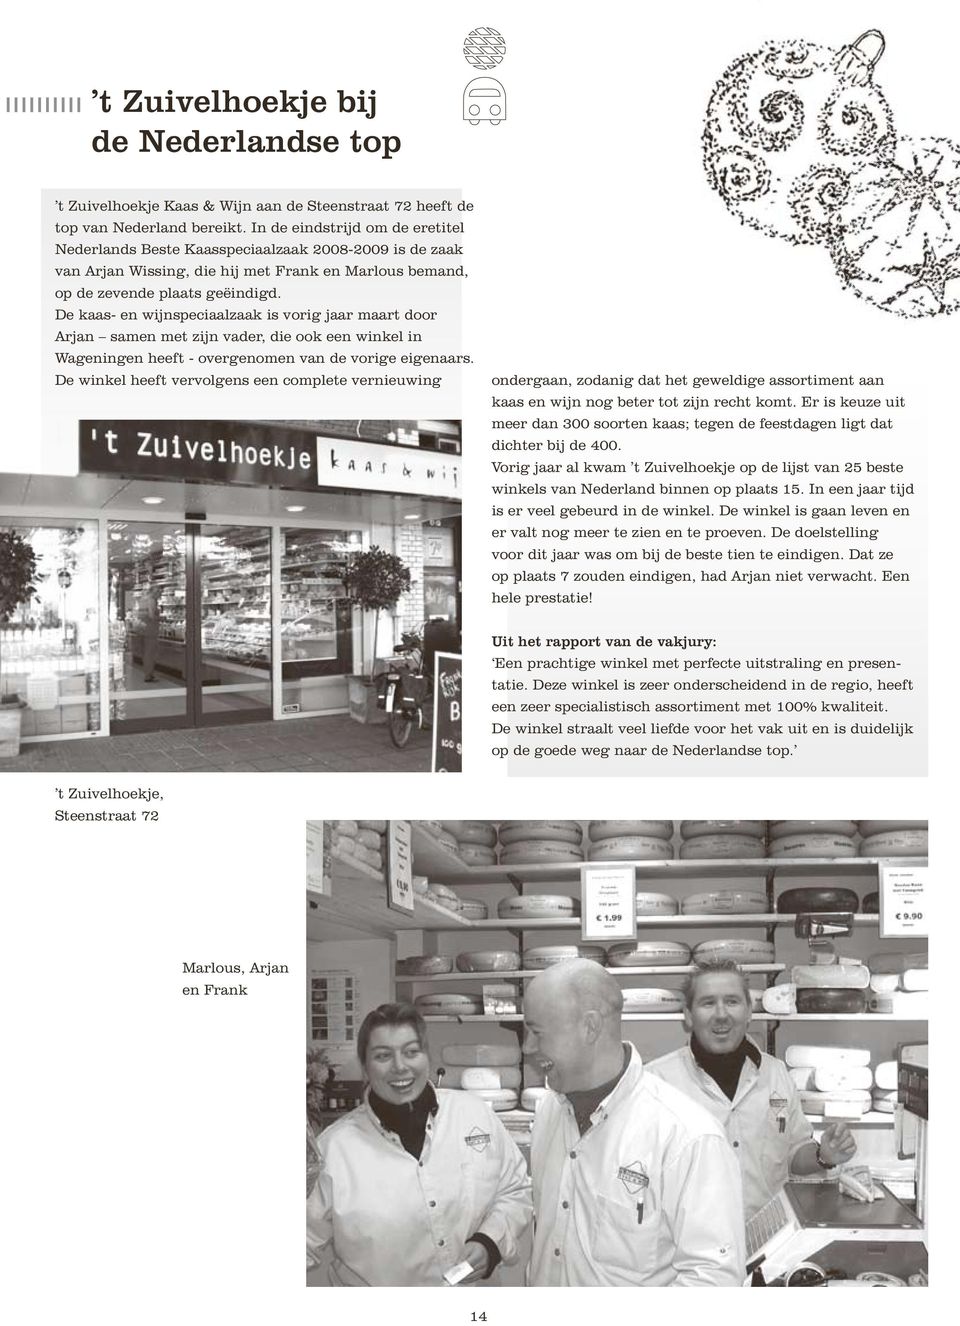 De kaas- en wijnspeciaalzaak is vorig jaar maart door Arjan samen met zijn vader, die ook een winkel in Wageningen heeft - overgenomen van de vorige eigenaars.